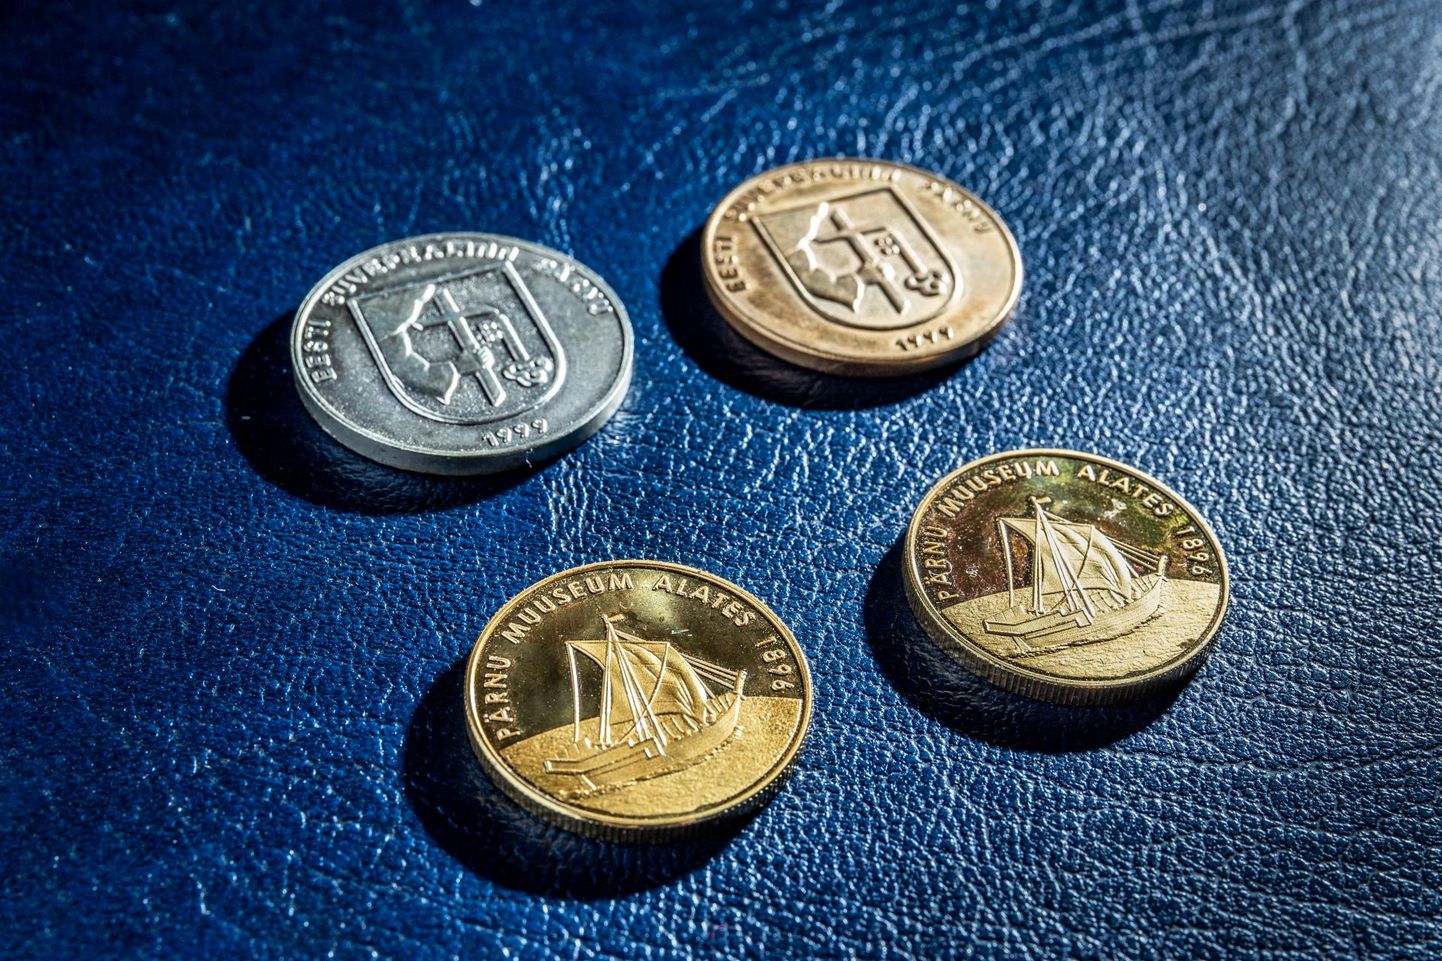 Eesti Pank kutsub osalema Pärnu- teemalise hõbemündi kujundamise konkursil.